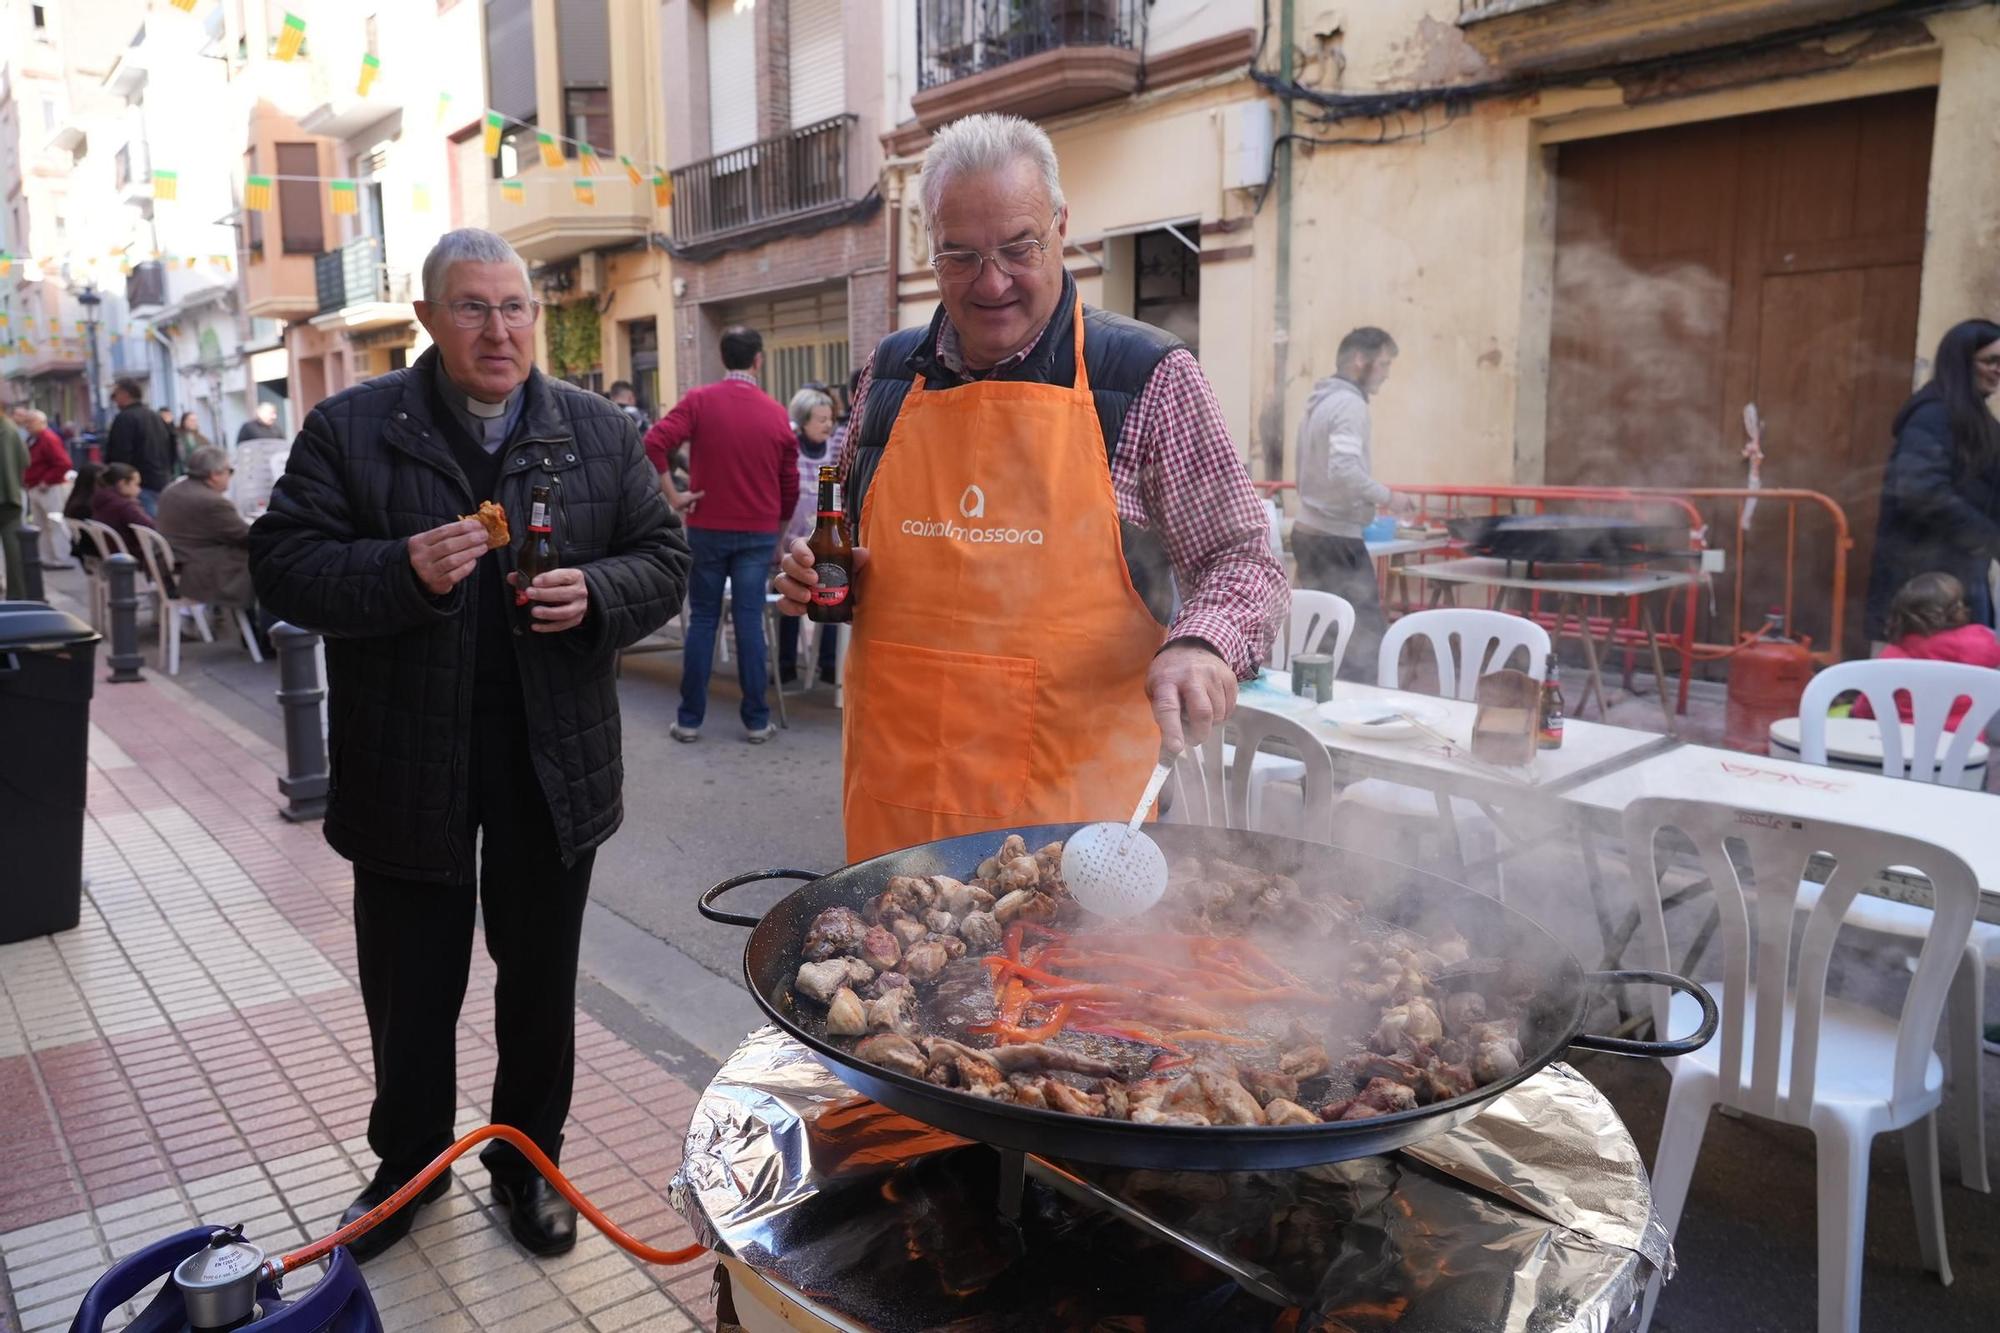 Galería: los vecinos de Sant Blai celebran su fiesta